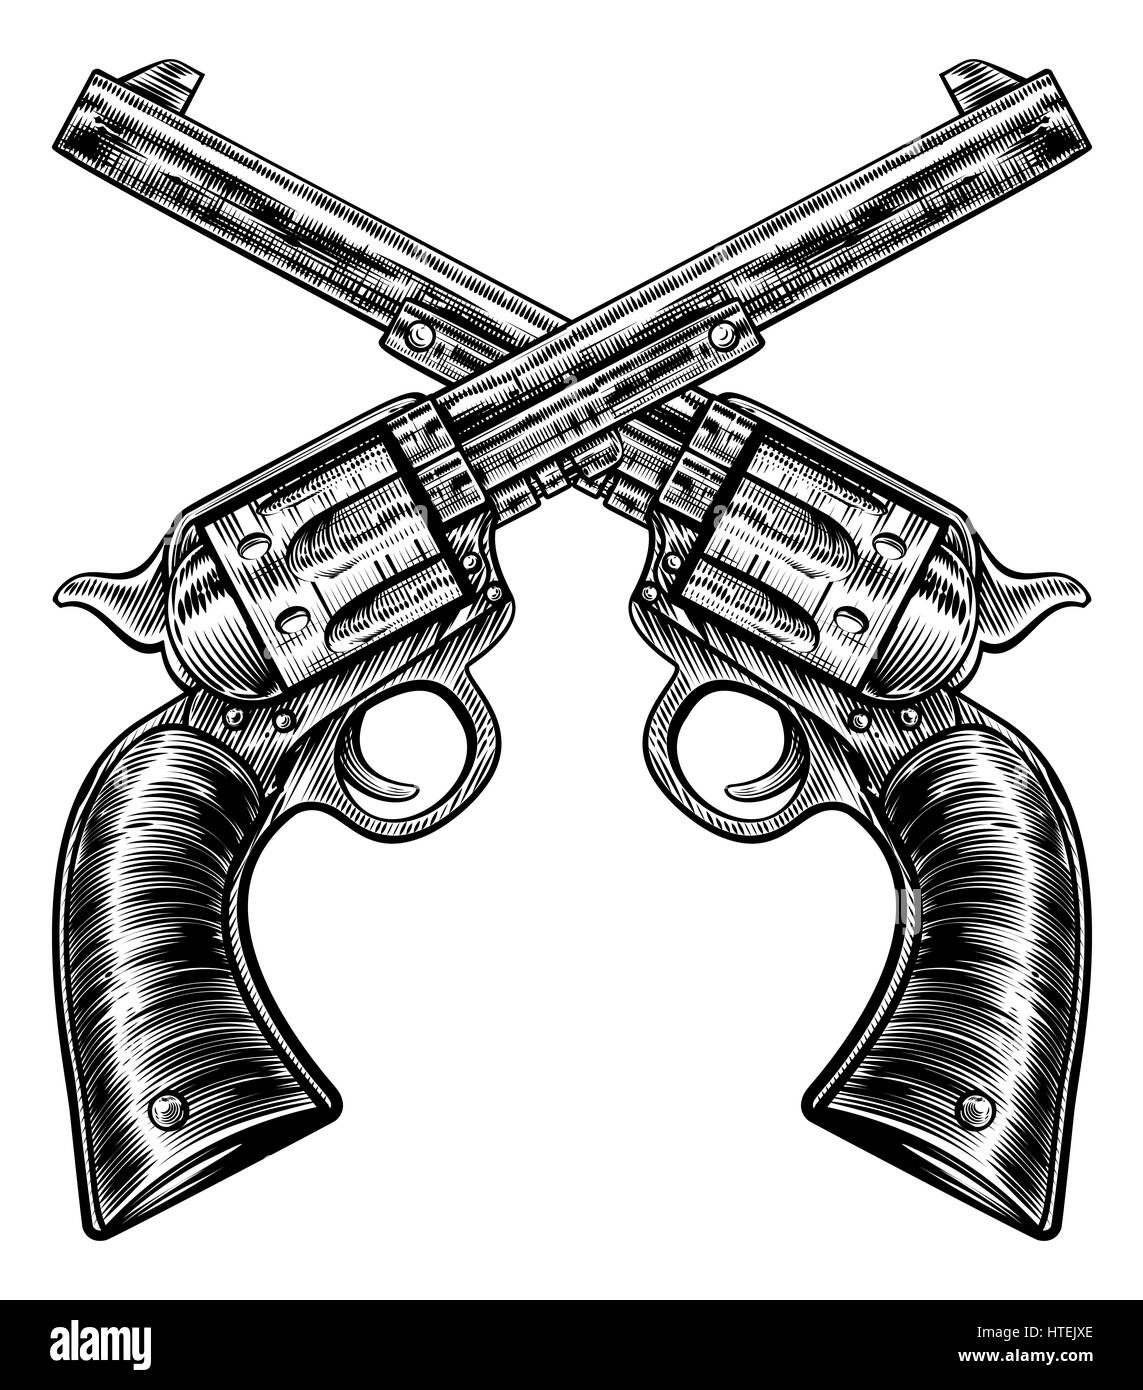 Ein paar gekreuzt Pistole Revolver Pistole sechs Shooter Pistolen gezeichnet in einem Vintage-retro-Holzschnitt geätzt oder graviert Stil Stockfoto